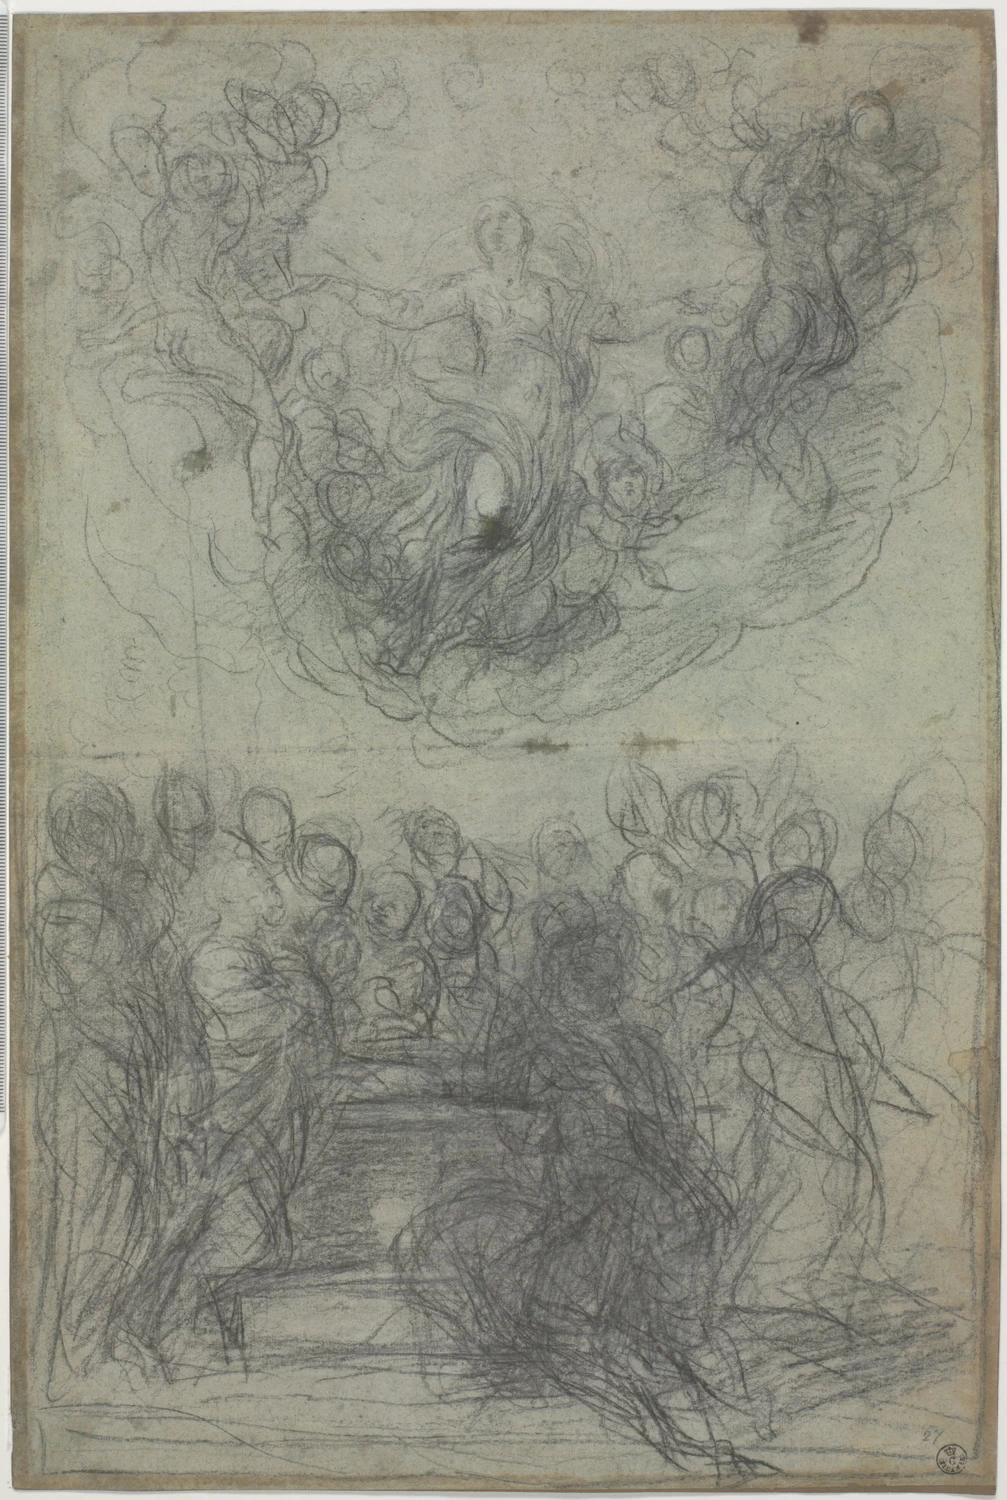 362-Guido Reni-Assunzione della Vergine - Gallerie degli Uffizi , Firenze 